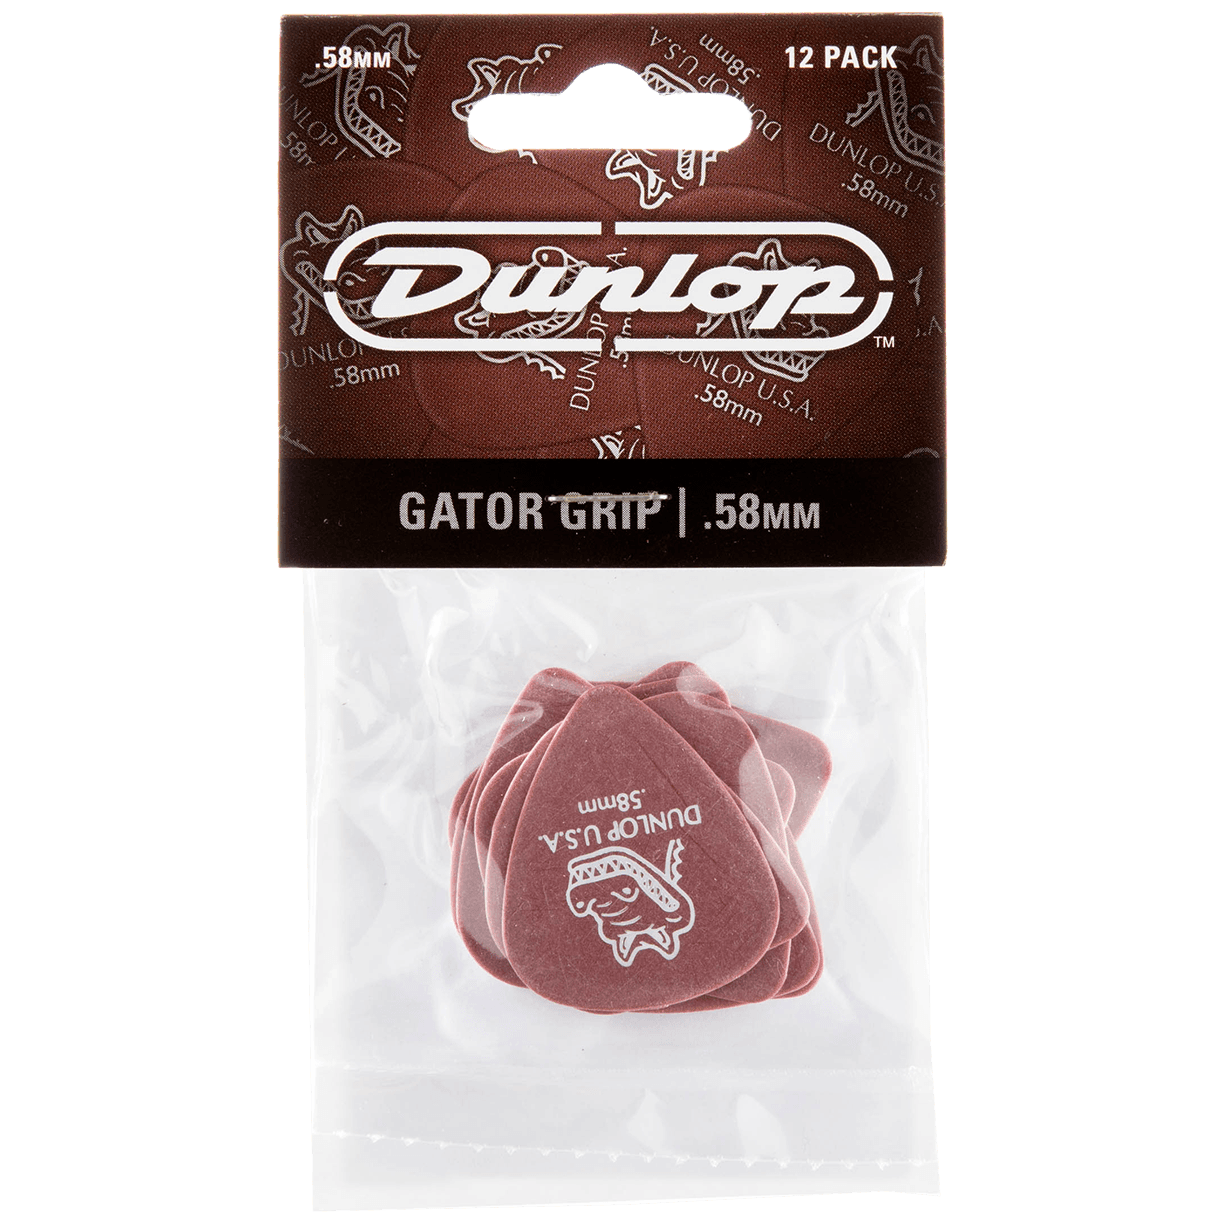 Dunlop Gator Grip 0.58 Player's Pack 12 Stück